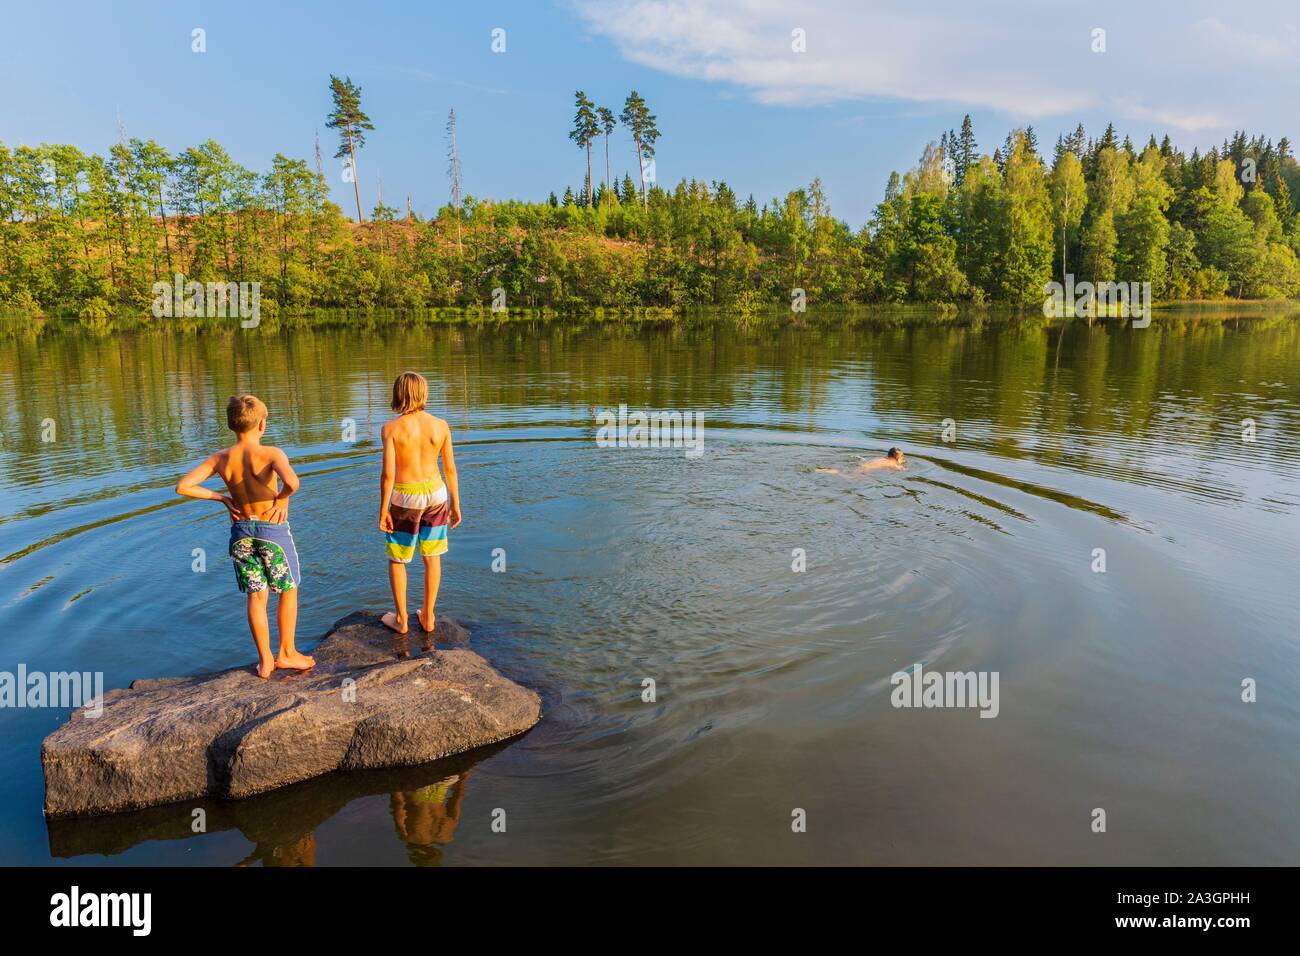 Suecia, del Condado de Vastra Gotaland, Ulricehamn Hokerum, Hamlet, Rochat informe sobre la familia, relajarse con los amigos en uno de los lagos que rodean la casa Foto de stock